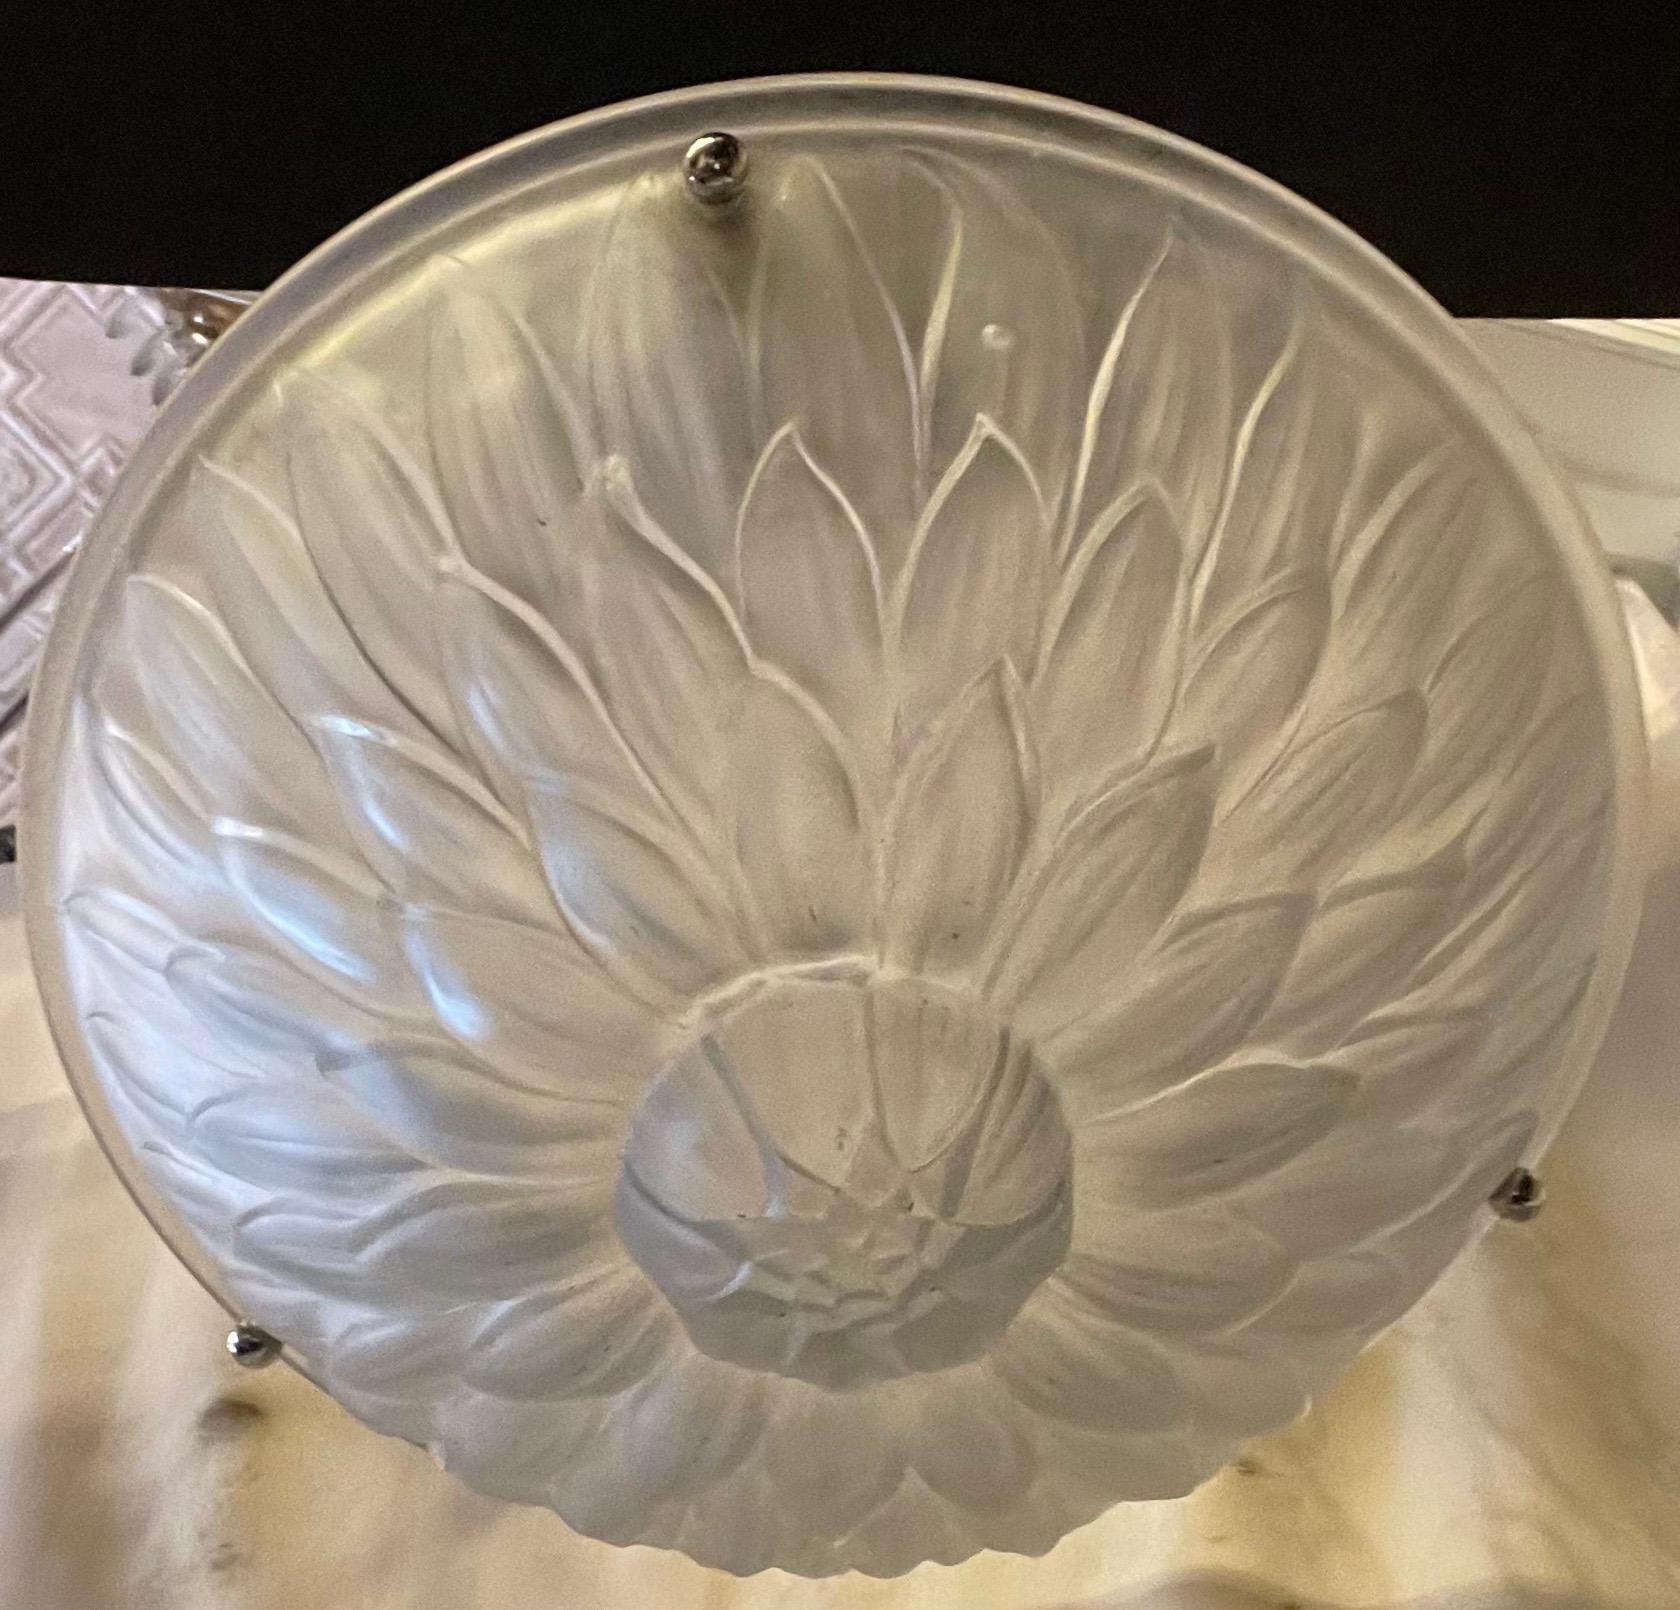 Eine wunderbare Französisch Mitte des Jahrhunderts Art Deco Sonnenblume Muster rund Milchglas Schale mit poliertem Nickel Baldachin und Kette, diese Leuchte wurde neu verdrahtet mit 3 neuen Kandelaber-Fassungen und die Höhe ist einstellbar mit dem